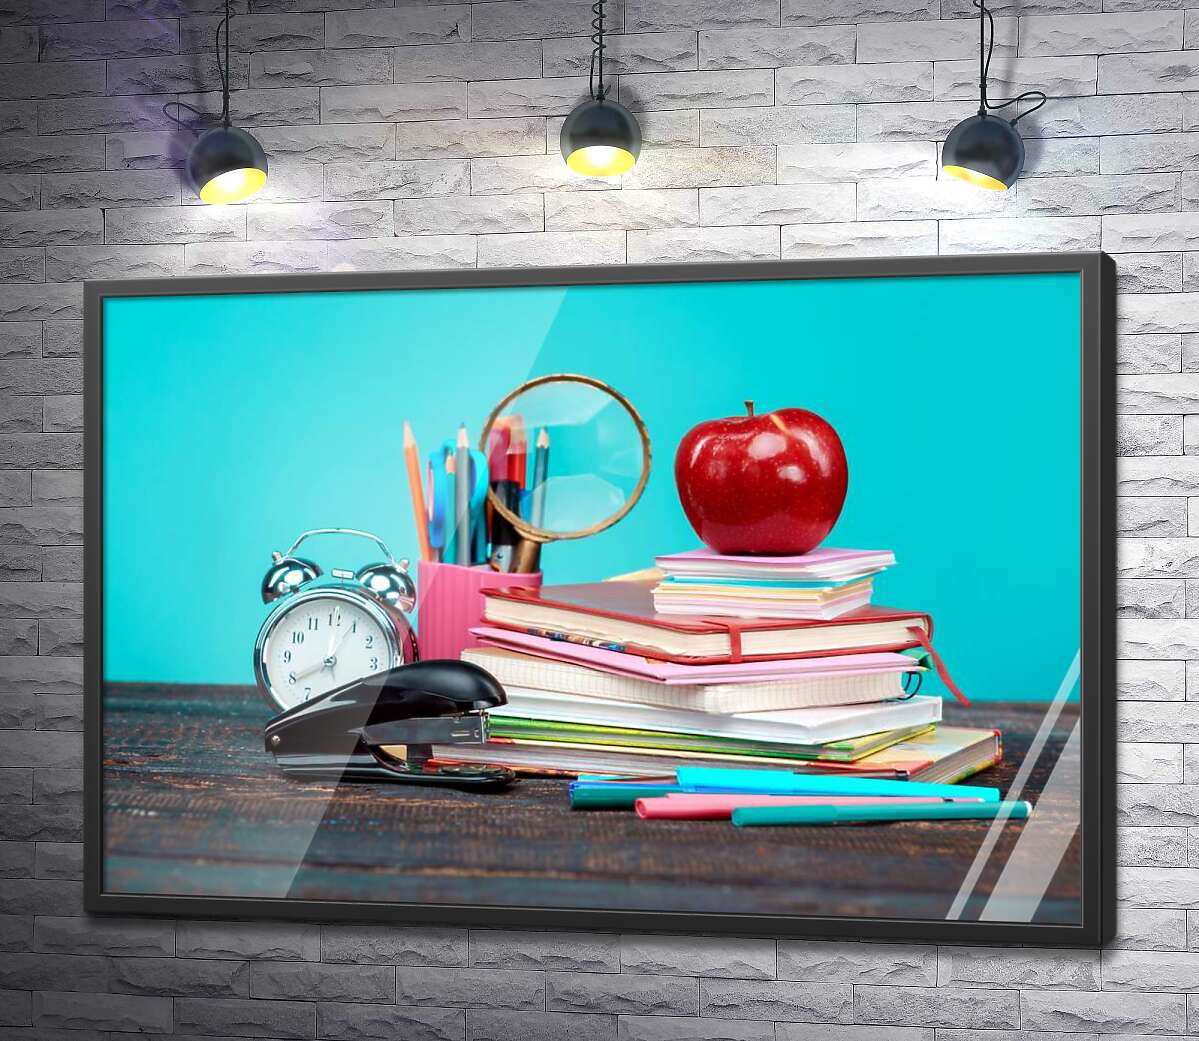 постер Натюрморт школьника: тетради, фломастеры, часы, степлер и яблоко